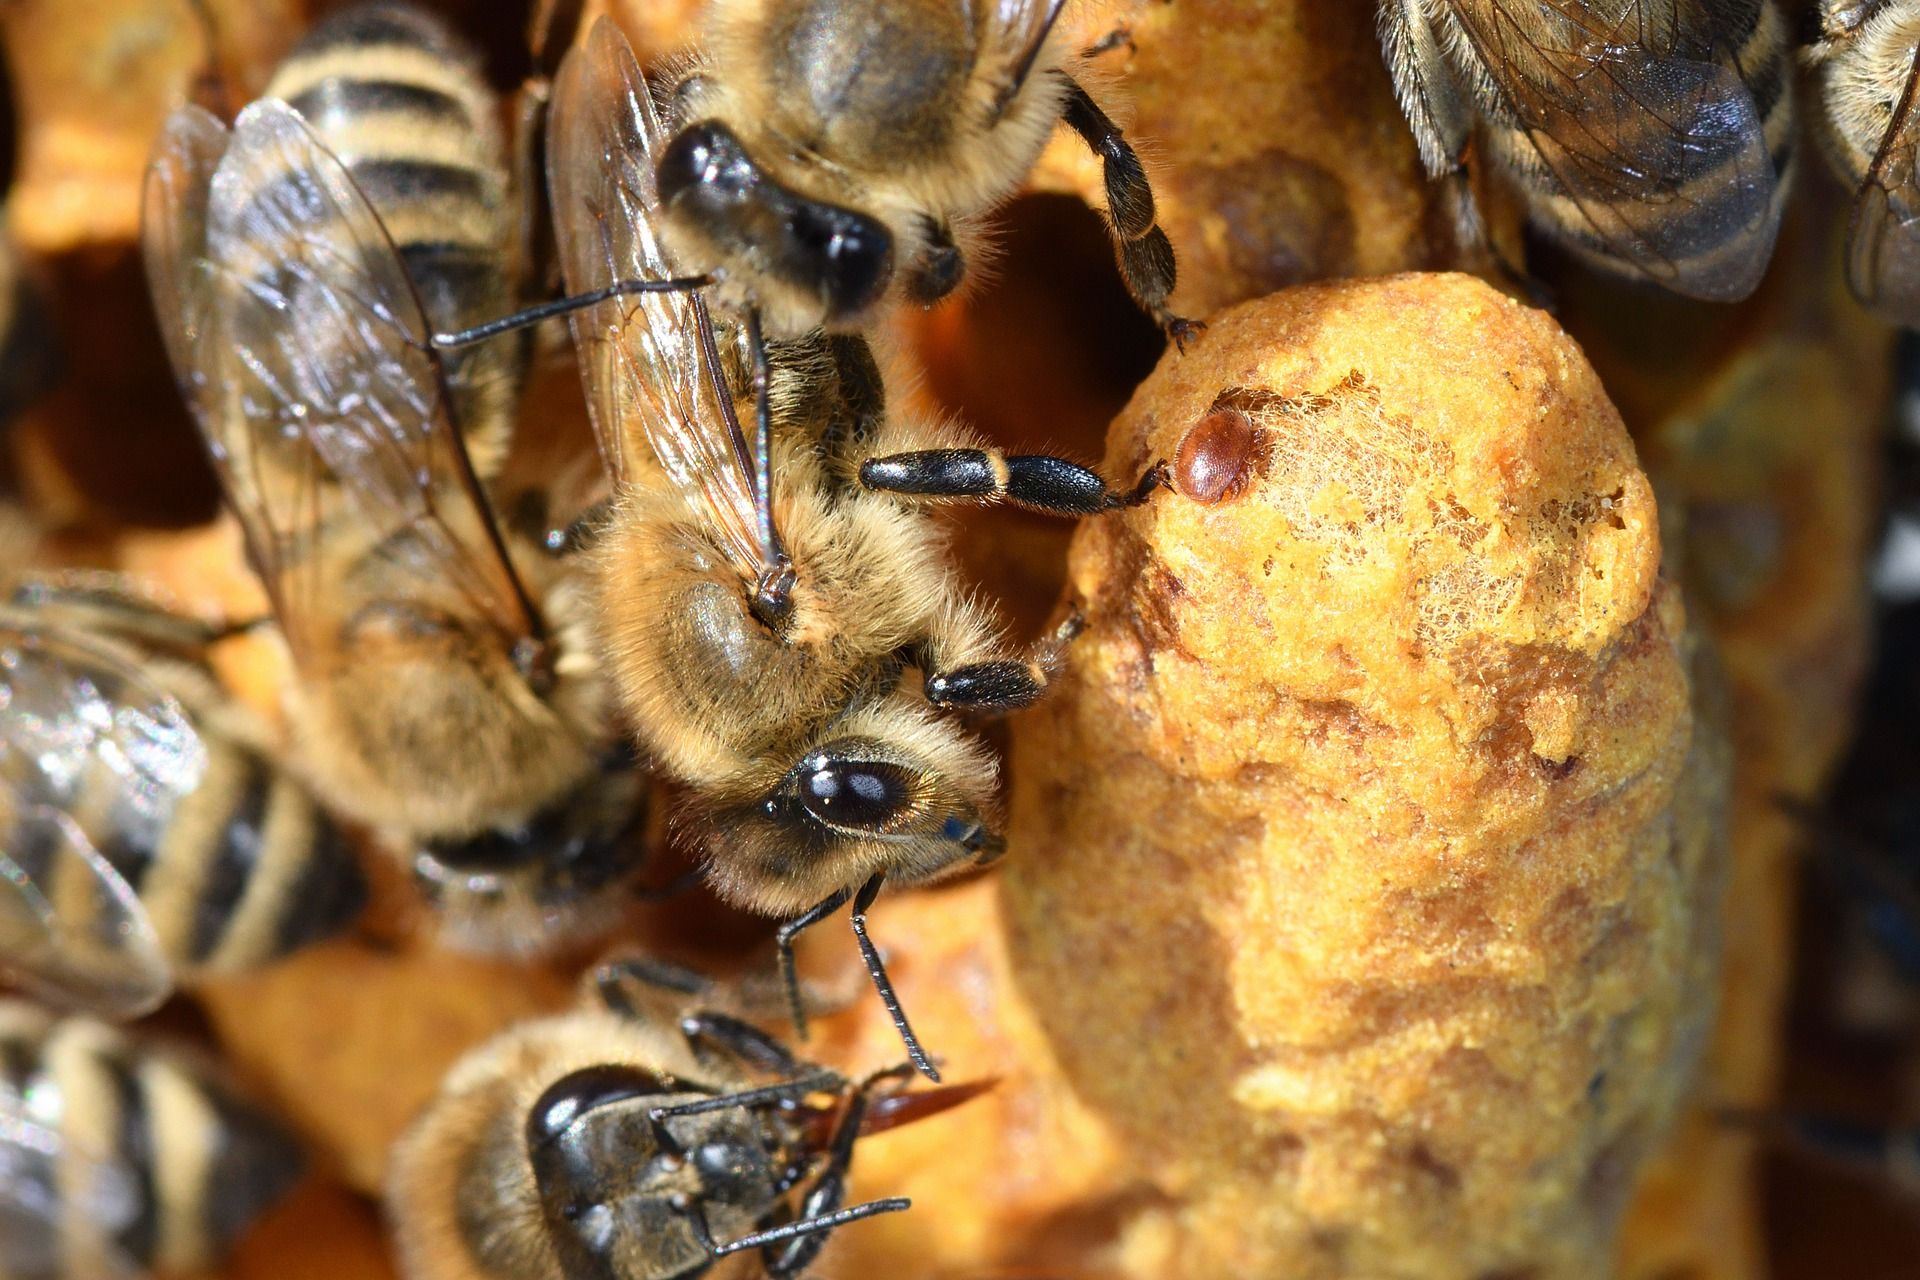 La varroa es un ácaro que parasita en las abejas / Foto: Serge - Pixabay